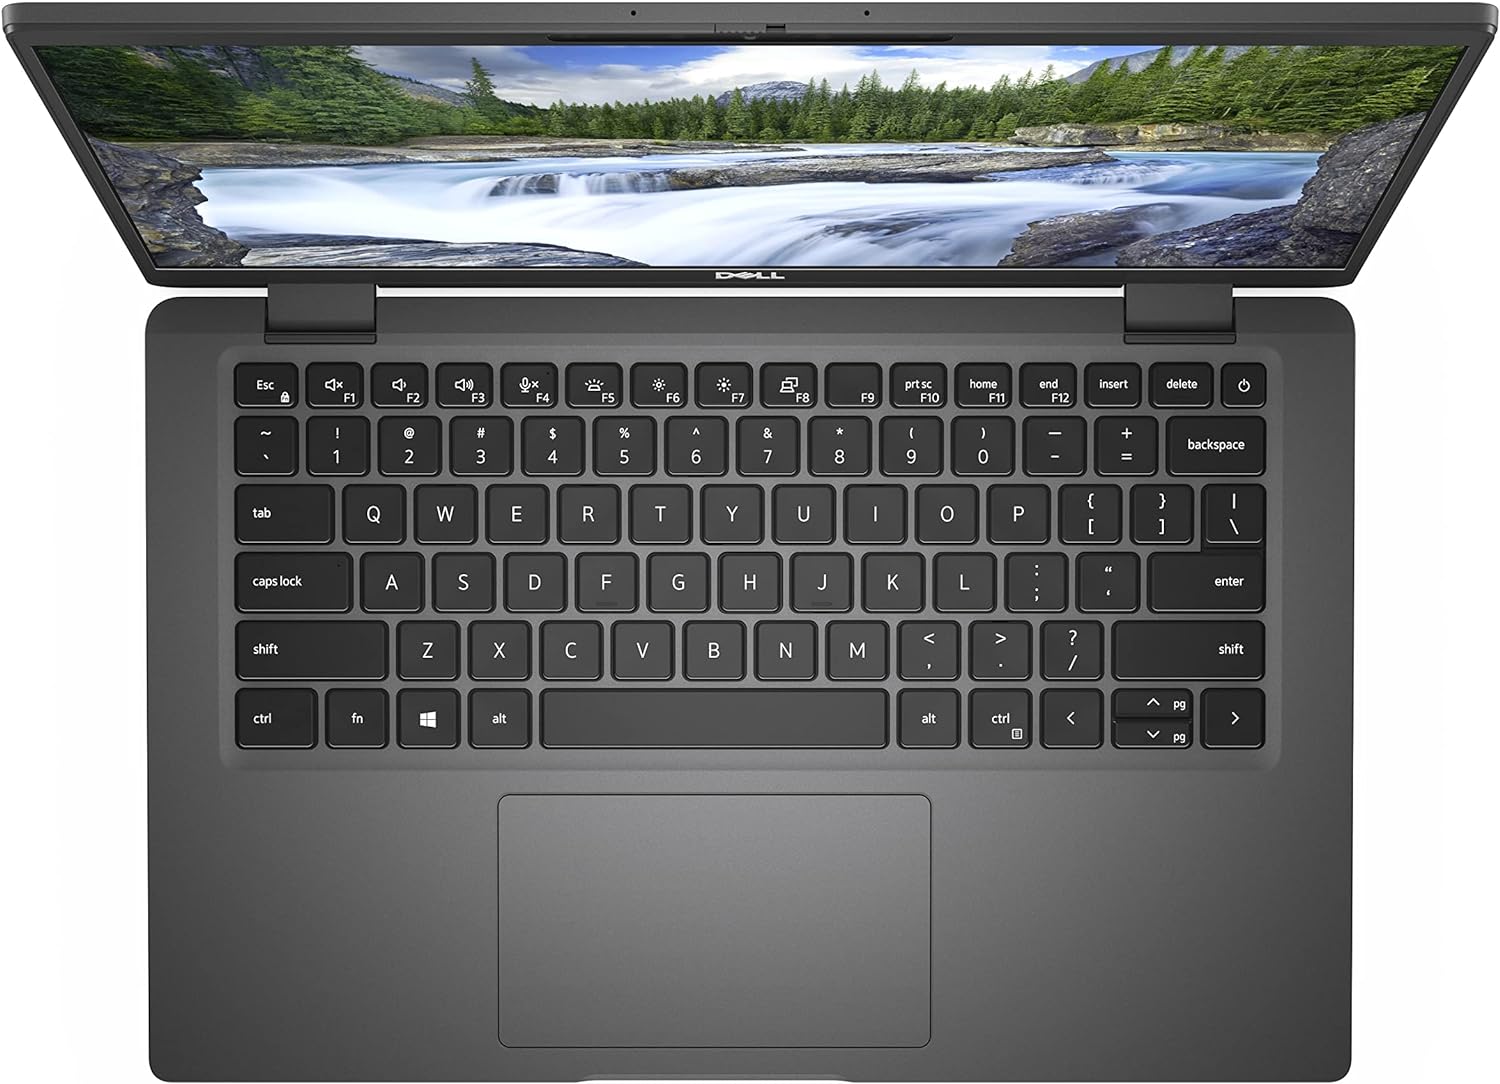 PC Notebook come nuovo Dell Lat 7420 i5-1145G7 - Ram 16 GB - SSD 256 GB-NVME - 14" Full HD - Windows 10 Pro - Garanzia 24 mesi - Disponibilità 3-5 giorni lavorativi